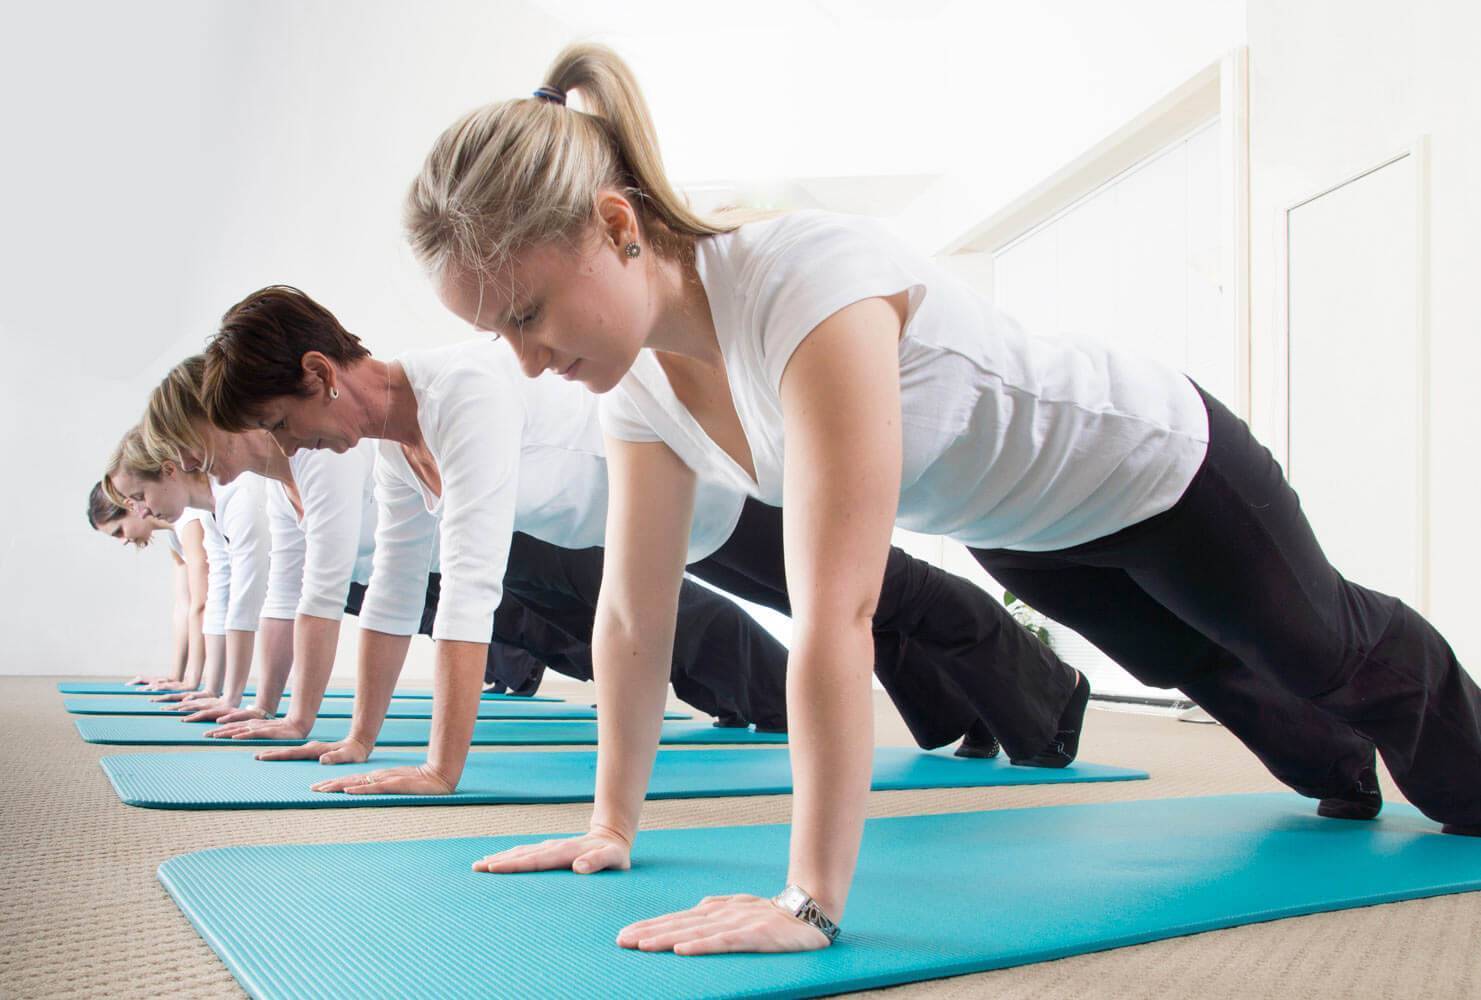 Йога для начинающих дома: упражнения, с чего начать